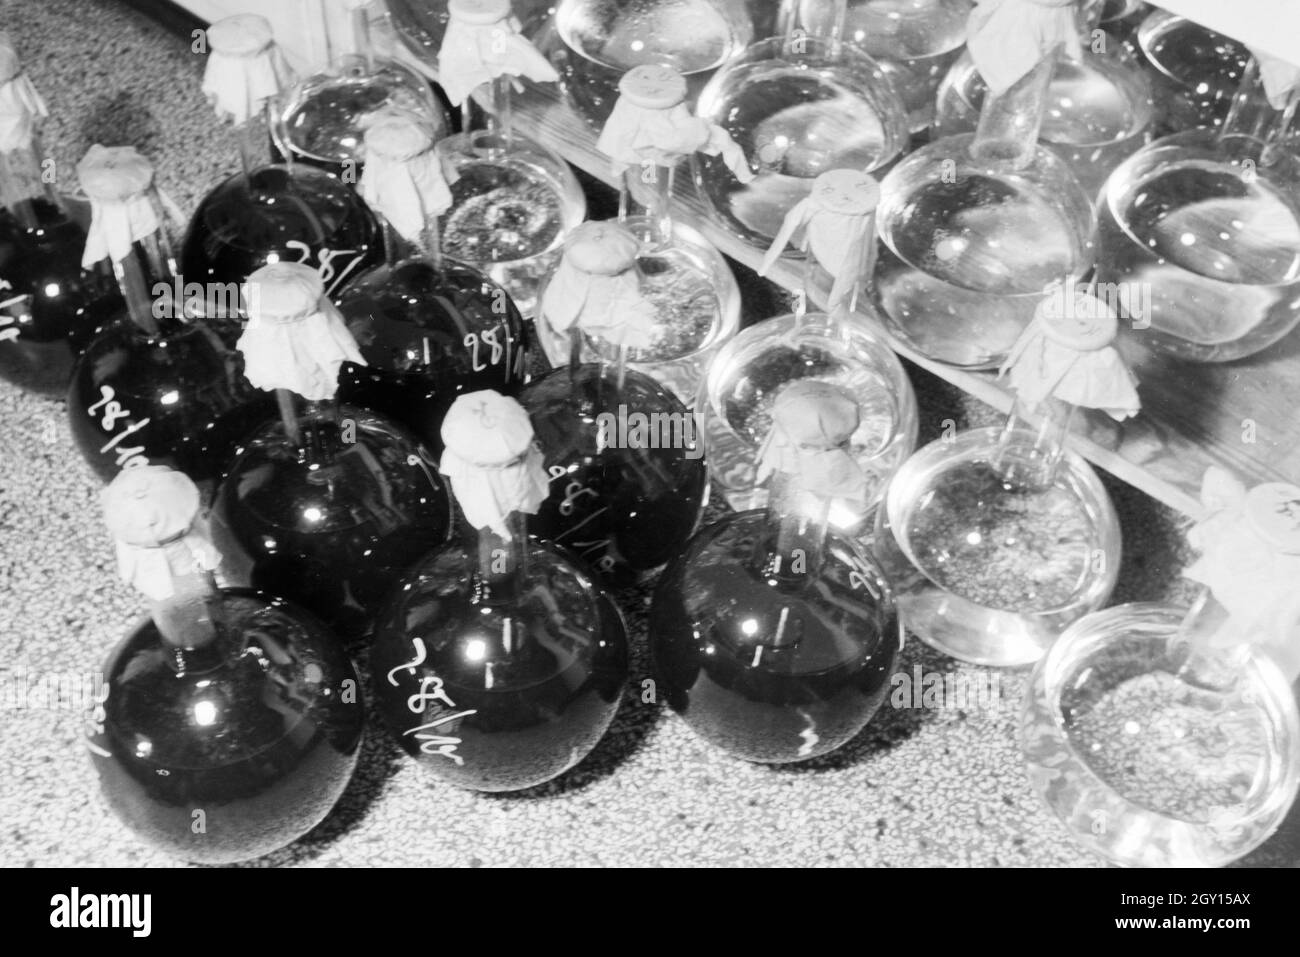 In Glaskolben abgefüllte und beschriftete Medikamentenproben im Arbeitsmarkt der Behringwerke, Marbug, Deutschland 1930er Jahre. Abgefüllt und etikettiert Medizin Proben in den Glaskolben im Labor der Behringwerke, Marburg, Deutschland 1930. Stockfoto